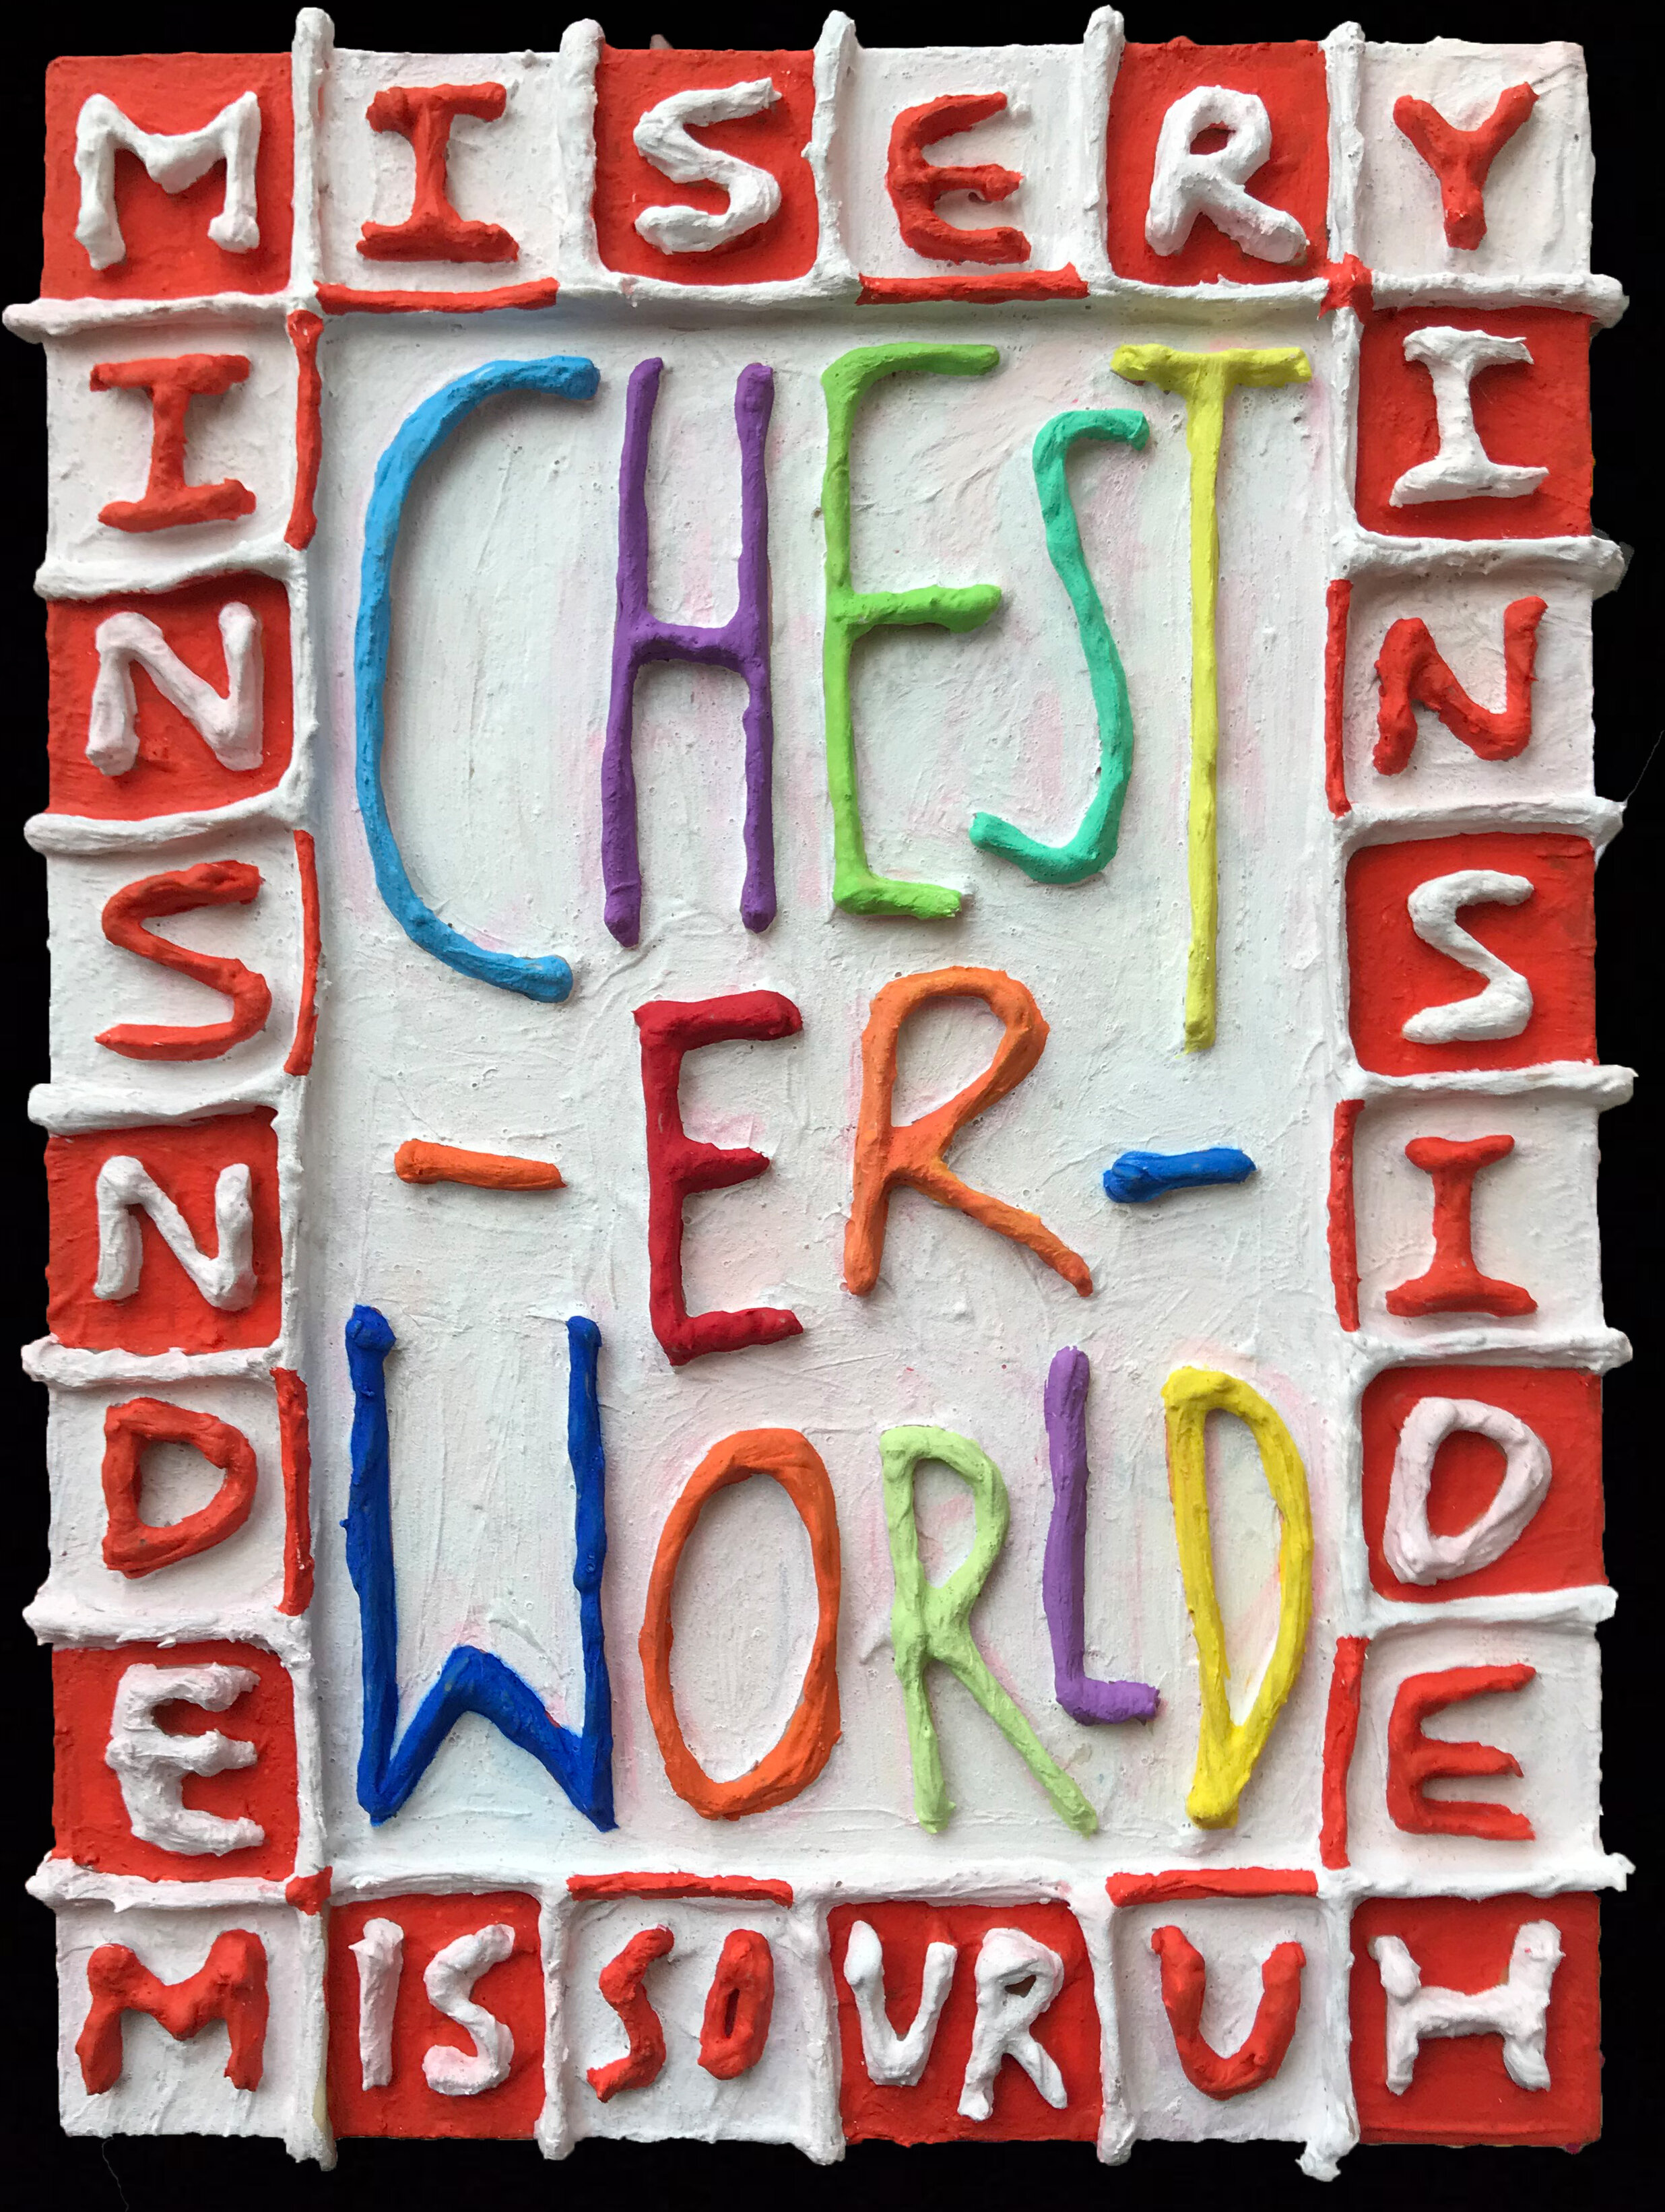 CHEST-ER-WORLD (MISERY INSIDE MISSOURUH)